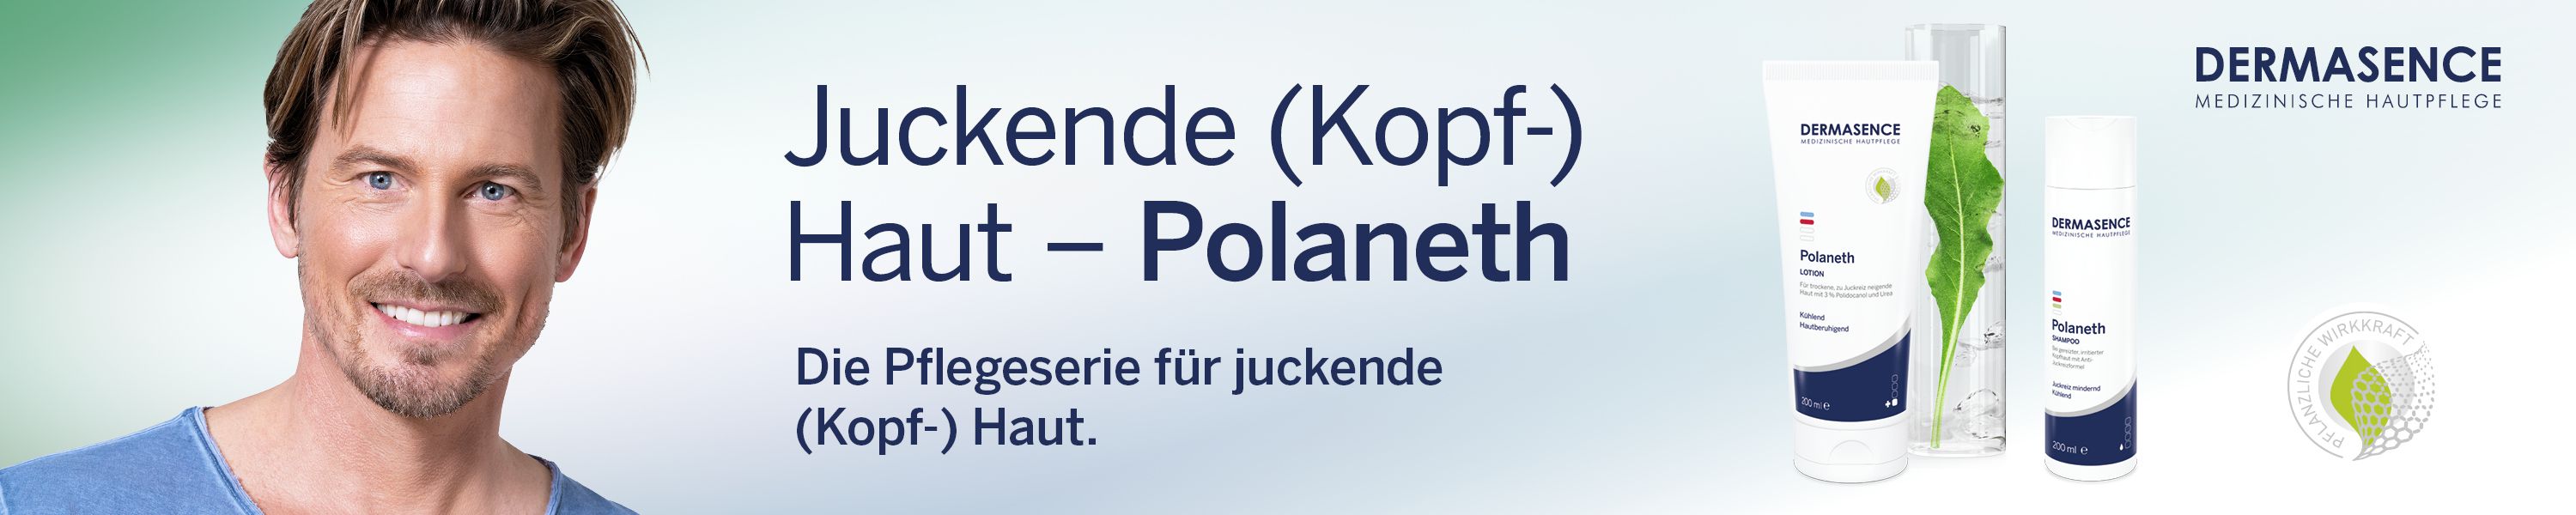 Polaneth - Akutpflege bei Juckreiz